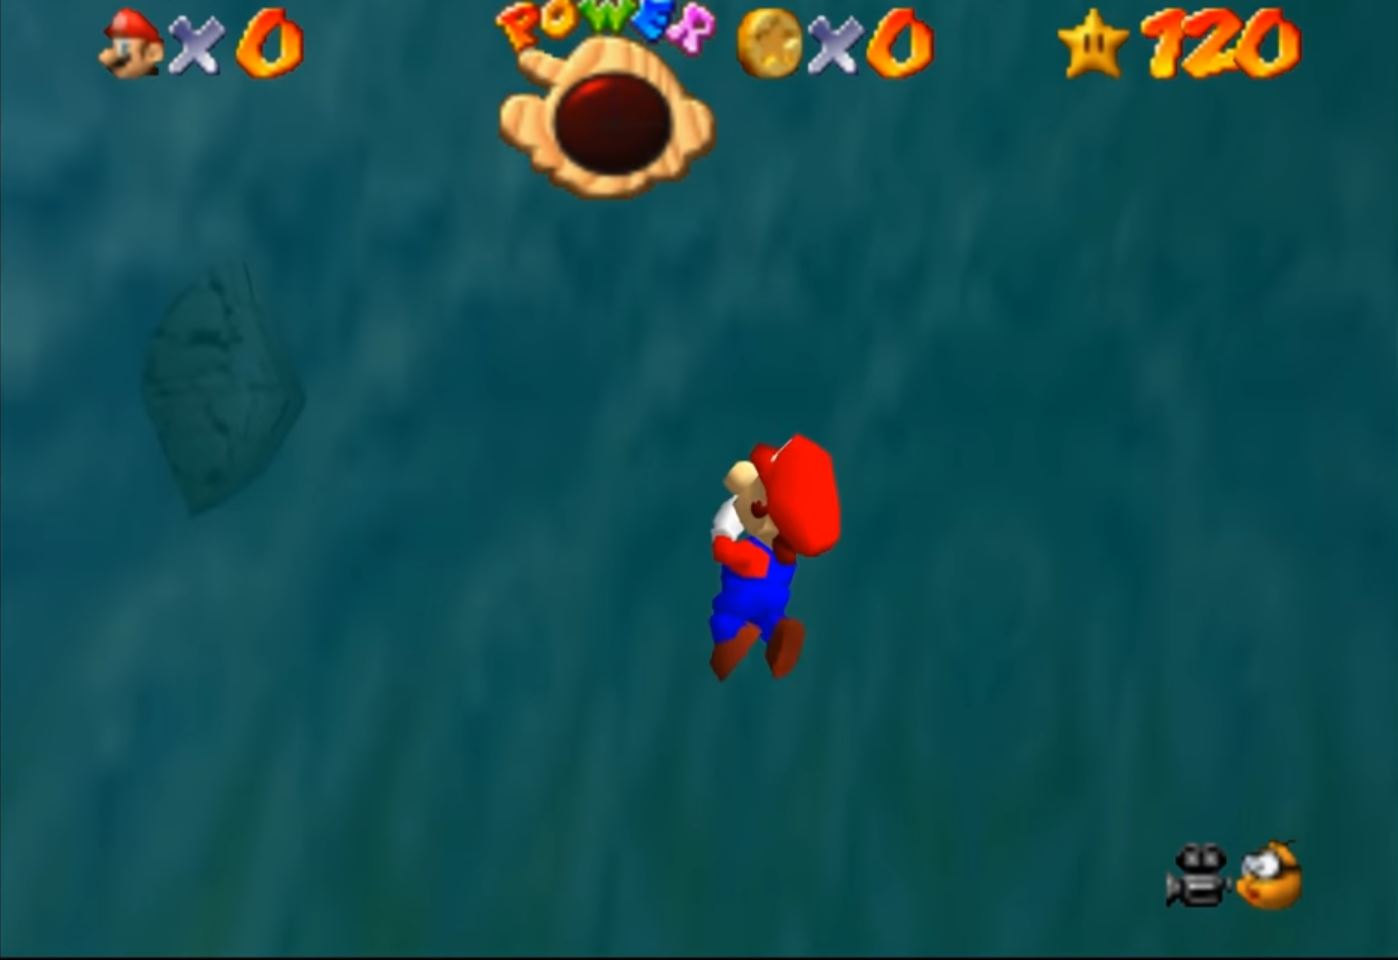 Mario drowning in Super Mario 64 